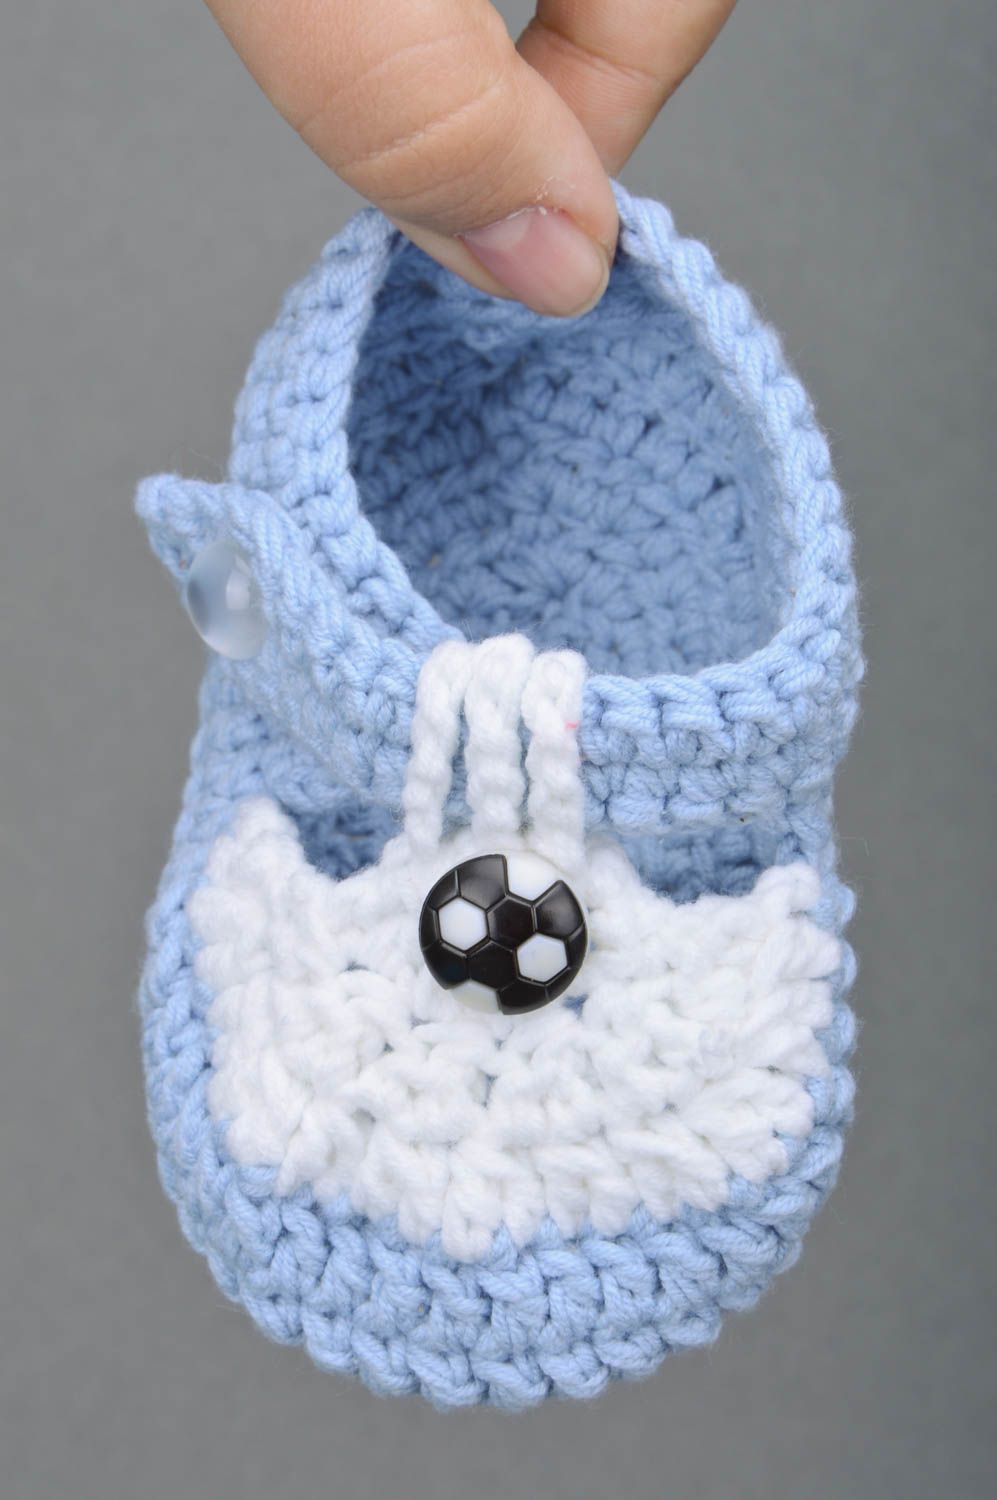 Голубые пинетки для младенцев из хлопка и акрила ручной работы вязаные крючком фото 4